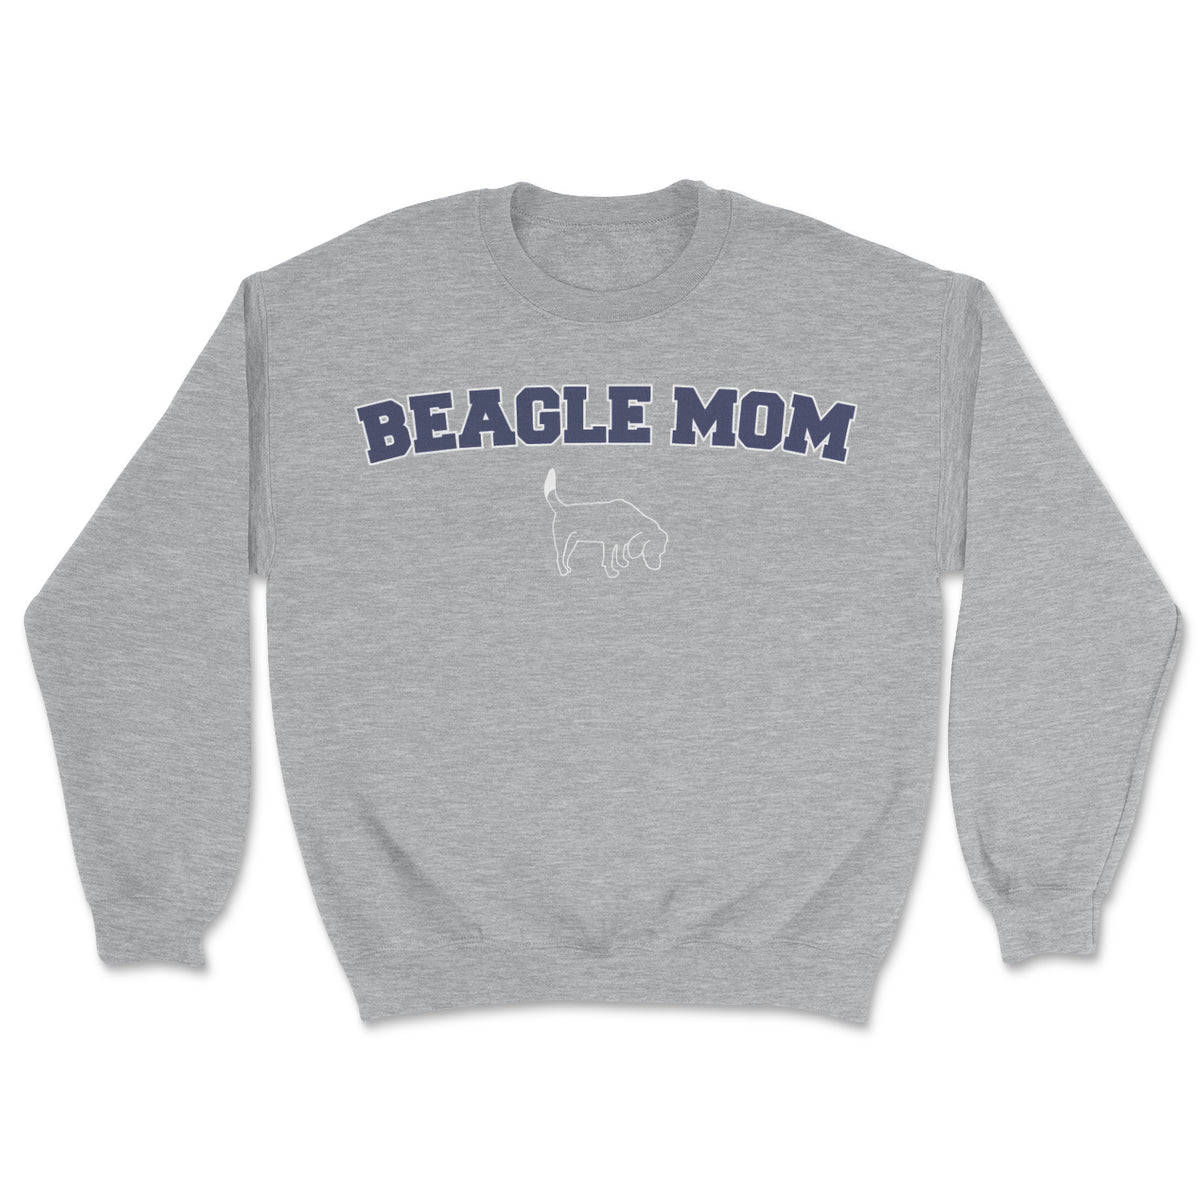 Campus Crew - Beagle Mom